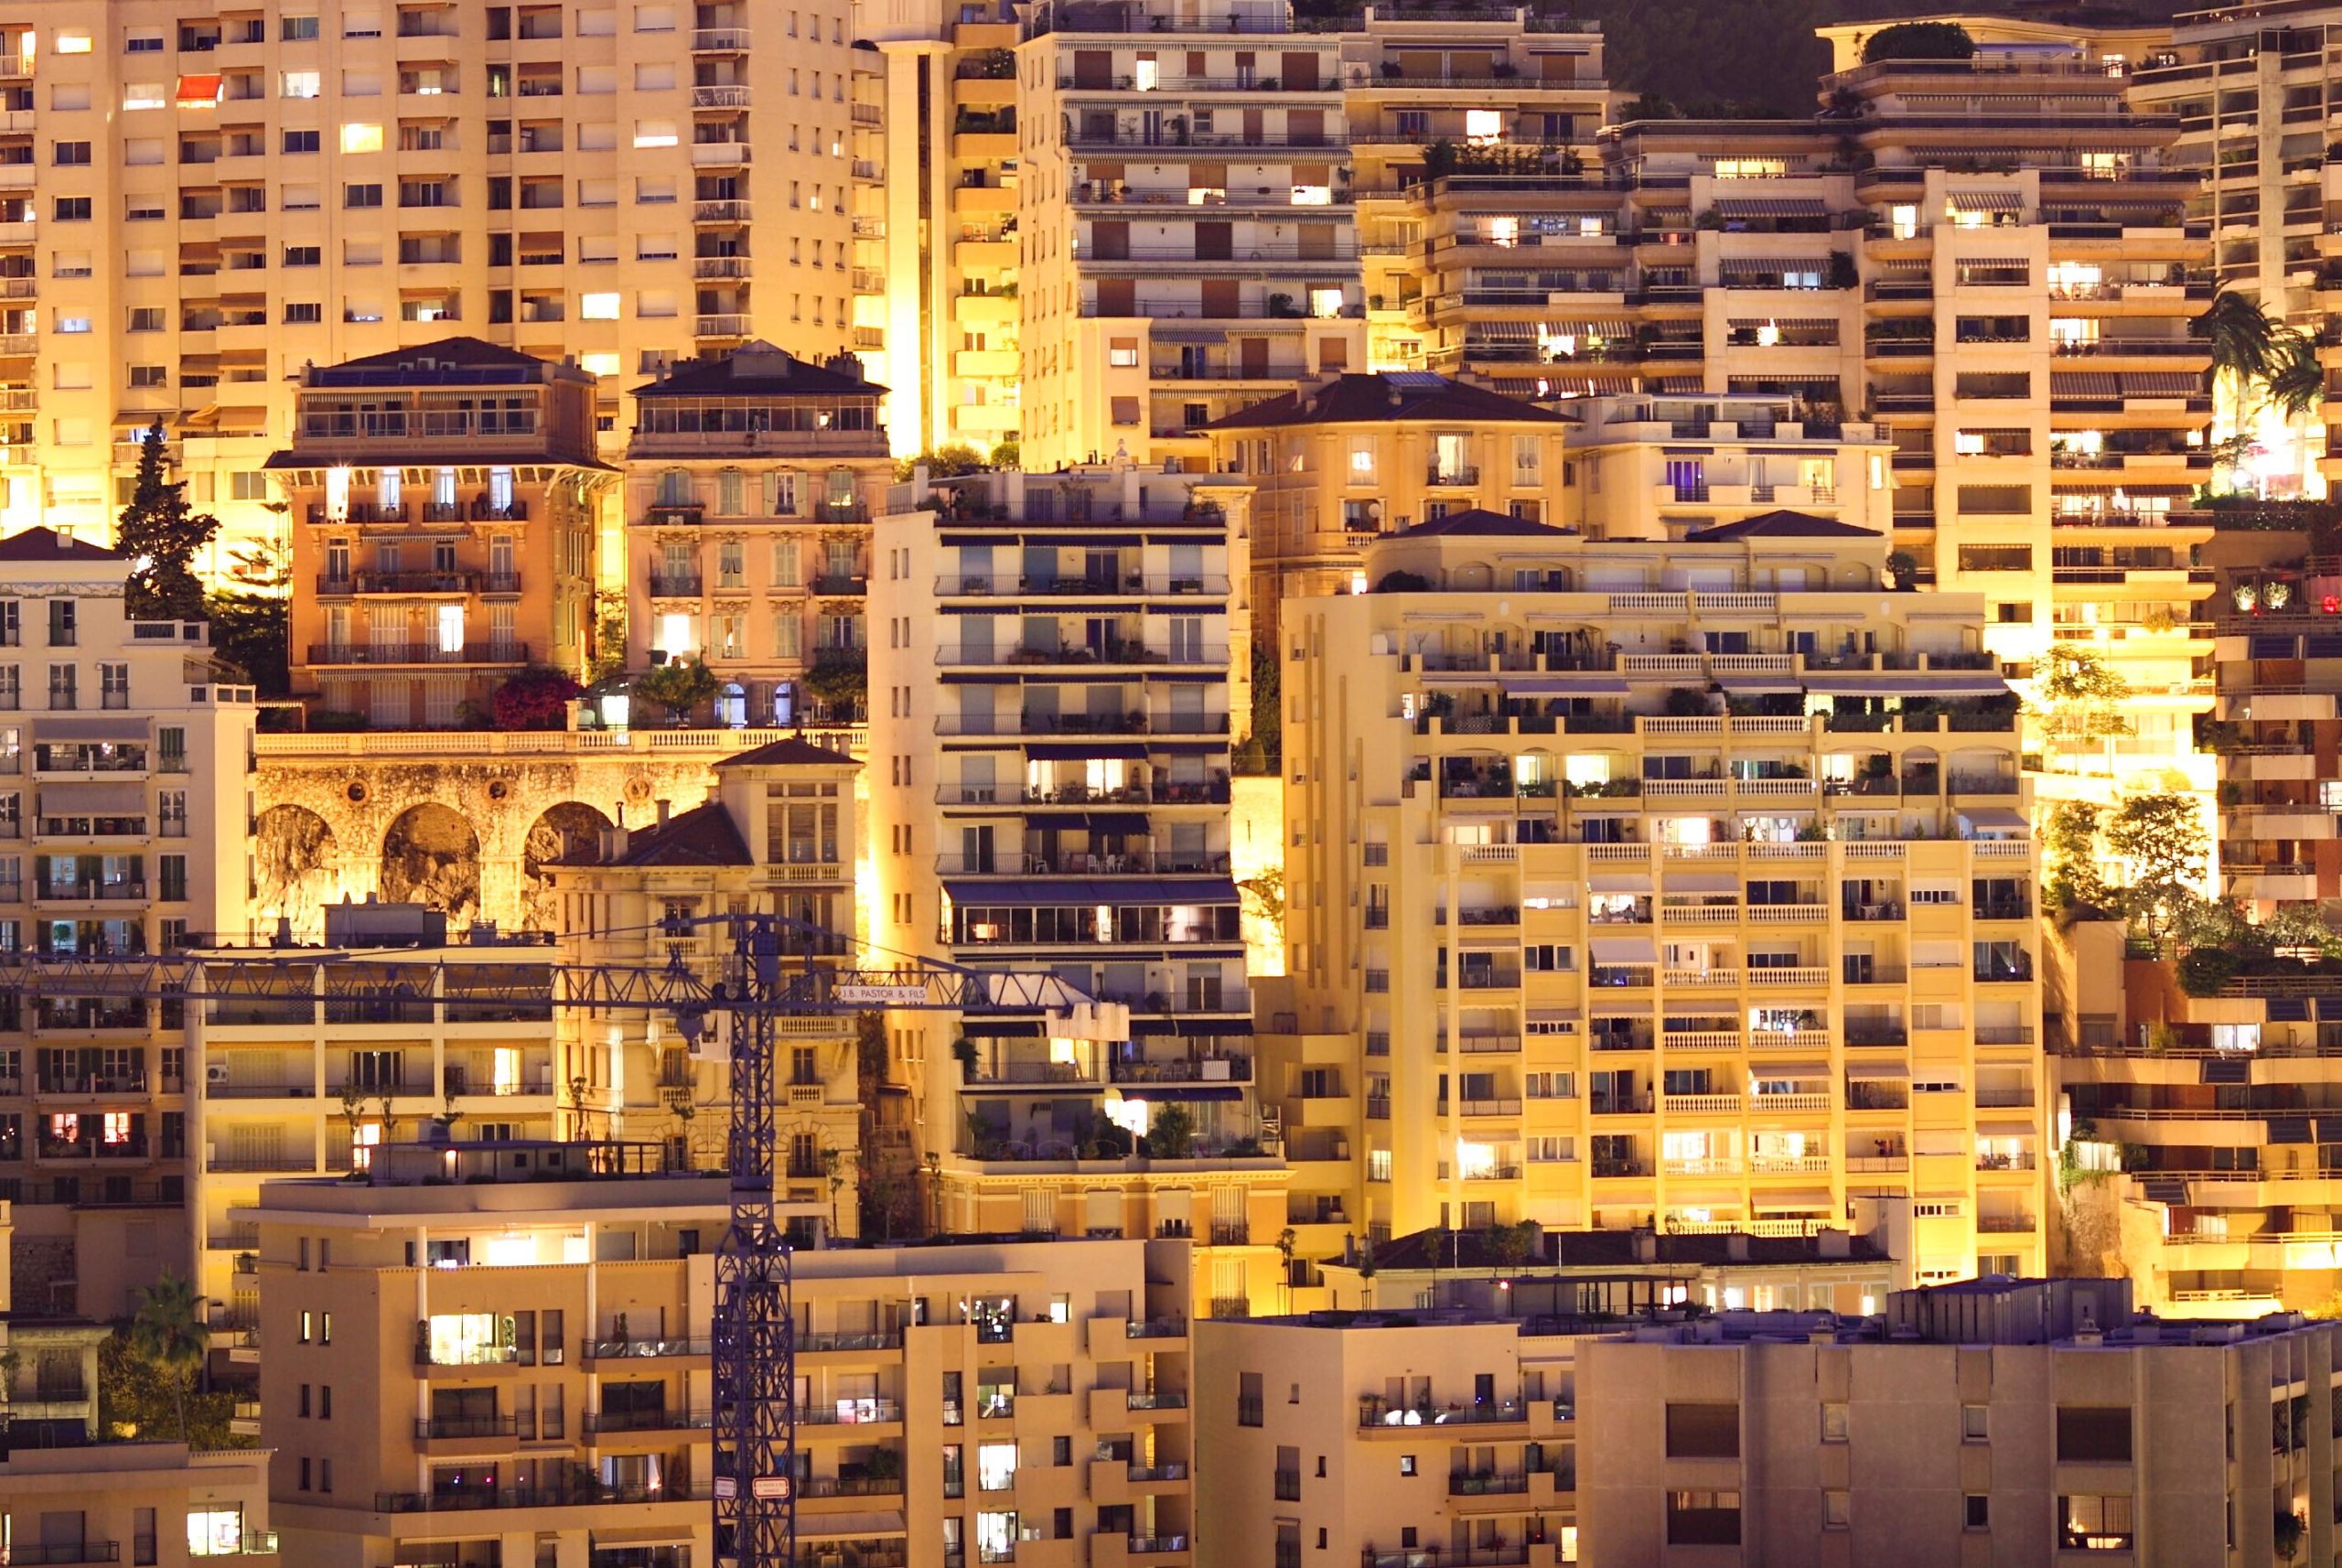 Night view of Monaco. Photo: lightpoet via Envato Elements